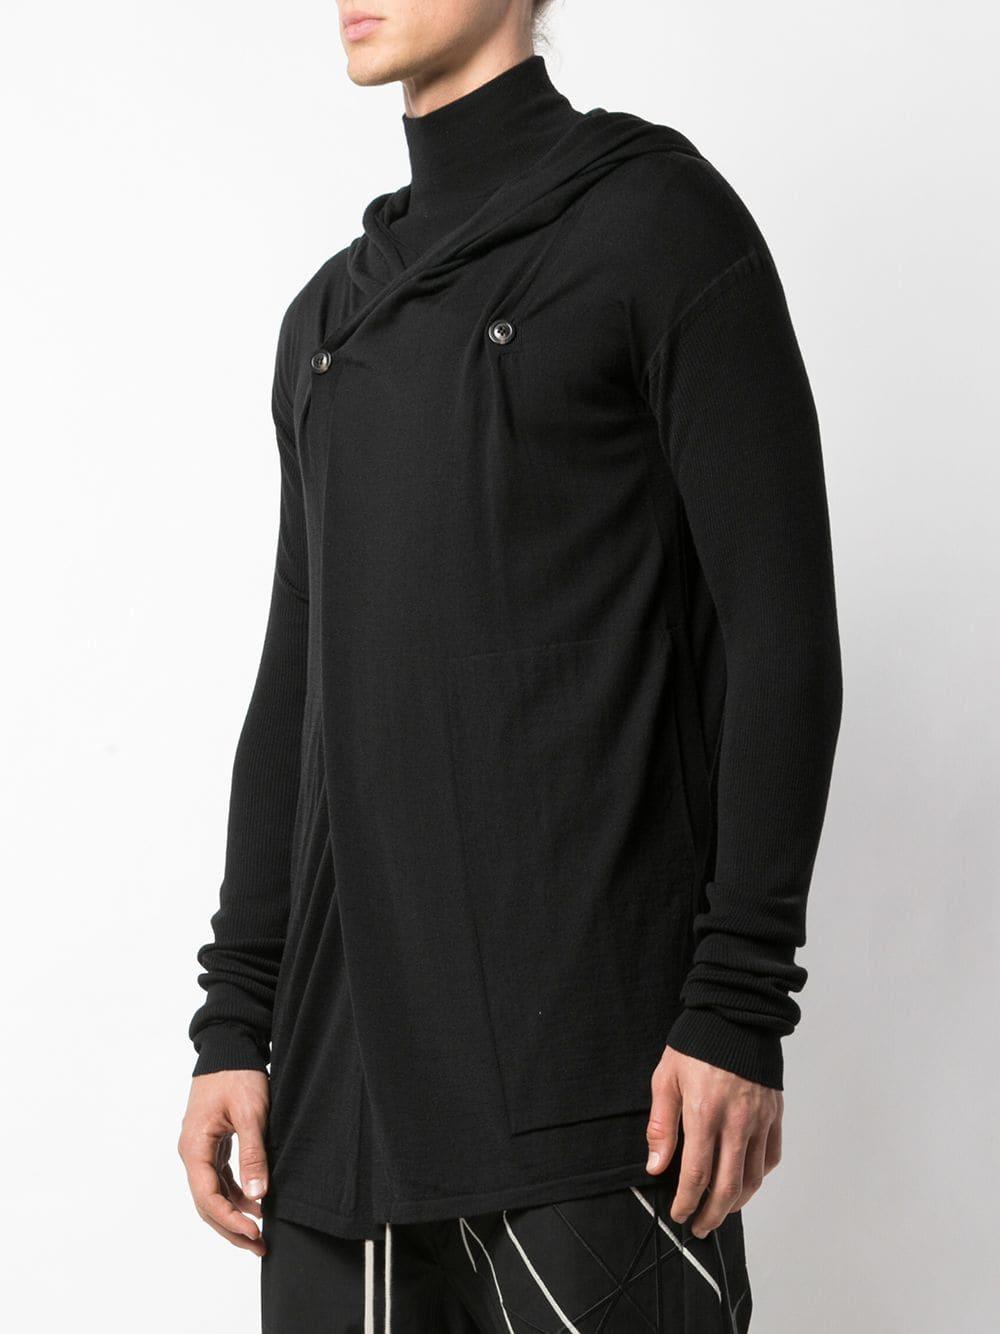 Rick Owens Wool Drape Hooded Sweater in Black for Men - Lyst